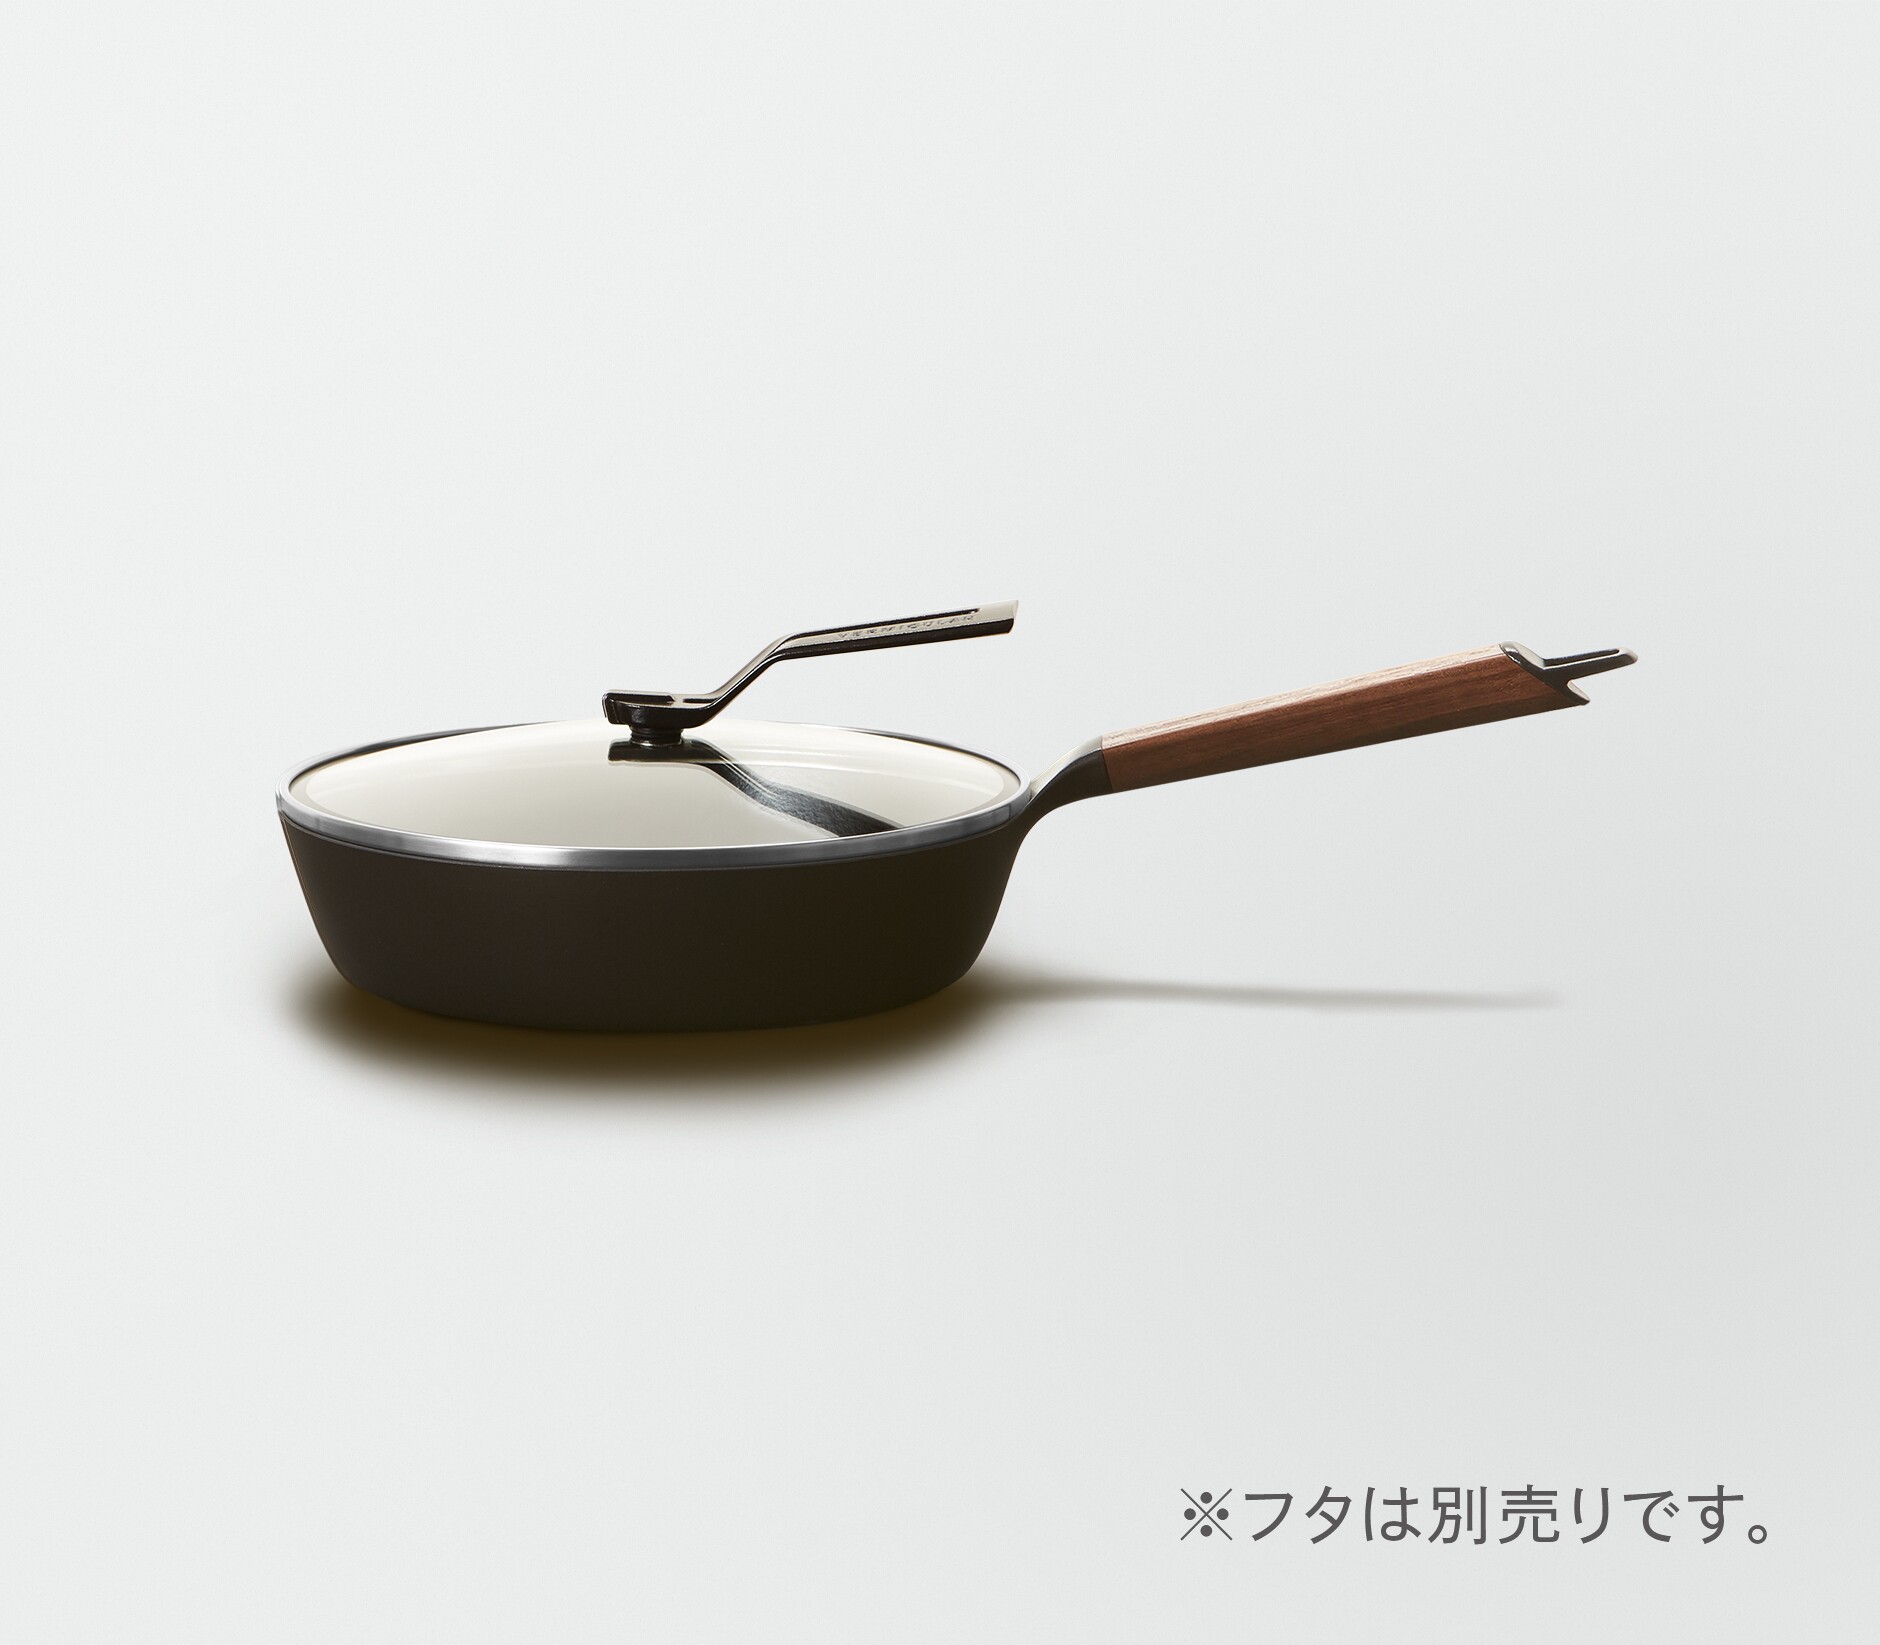 生産国日本【美品】バーミキュラ フライパン 24cm 深型